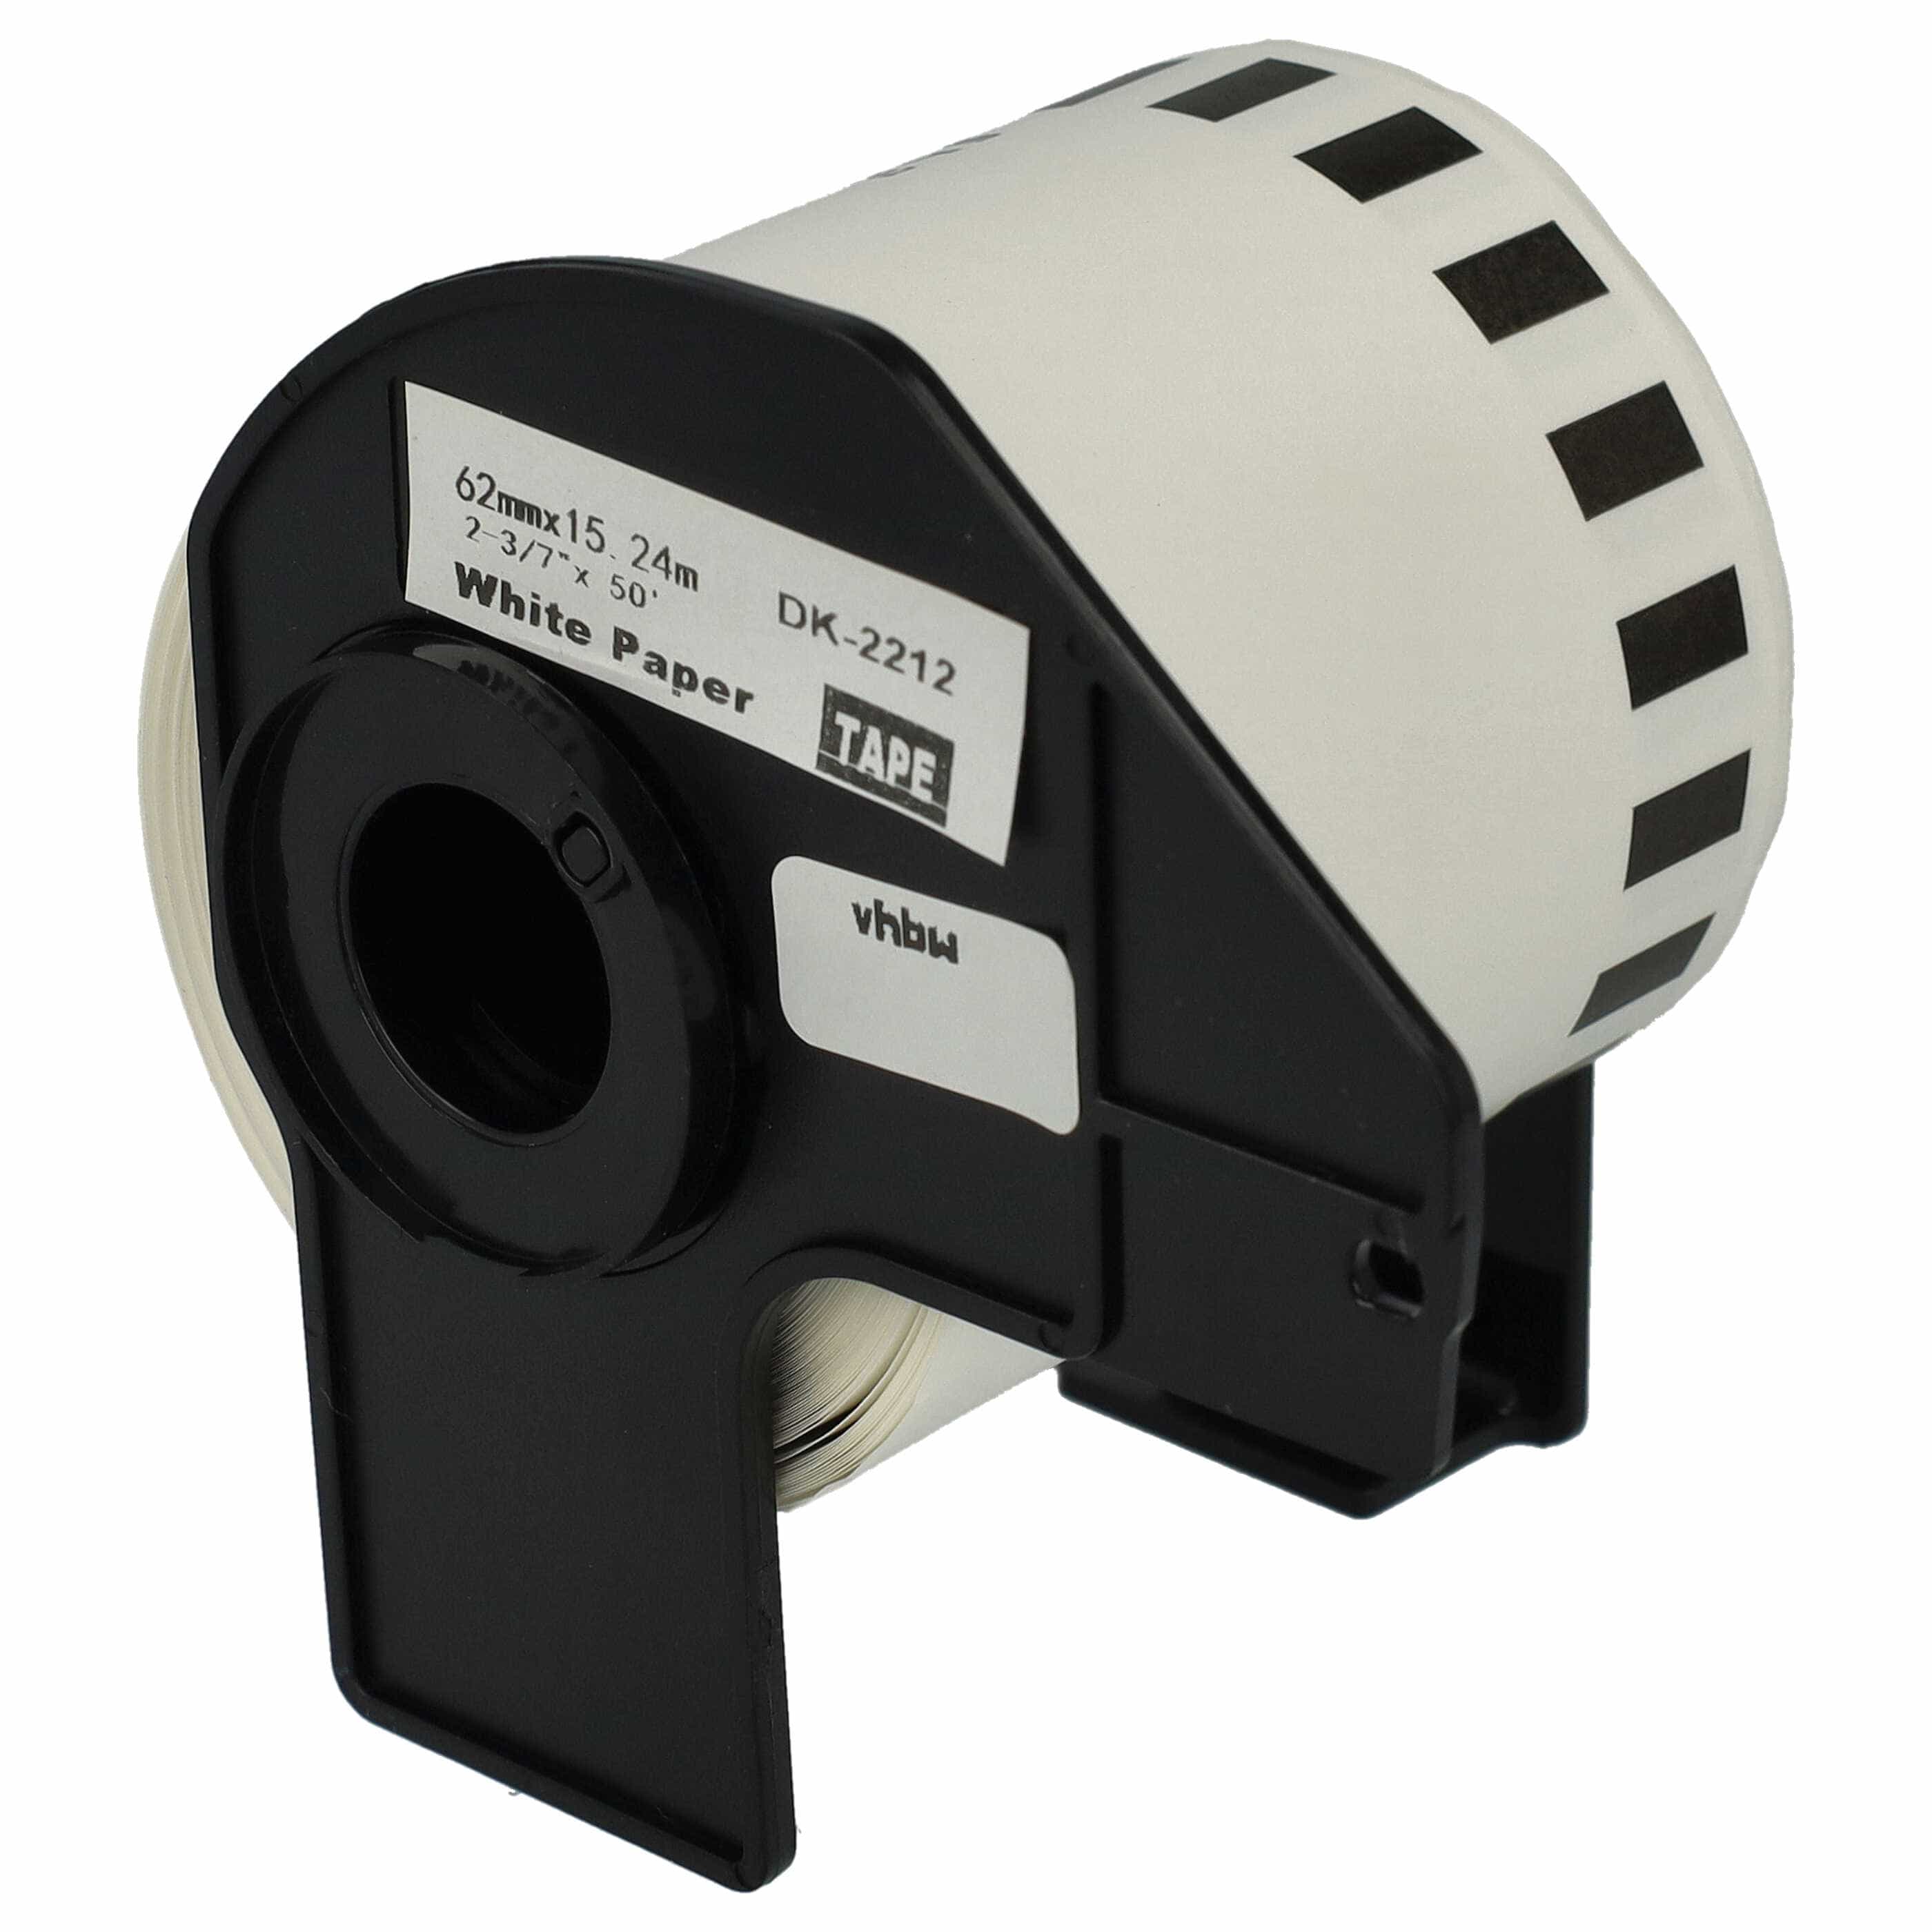 Rotolo etichette sostituisce Brother DK-22212 per etichettatrice - Premium 62mm x 15,24m + supporto